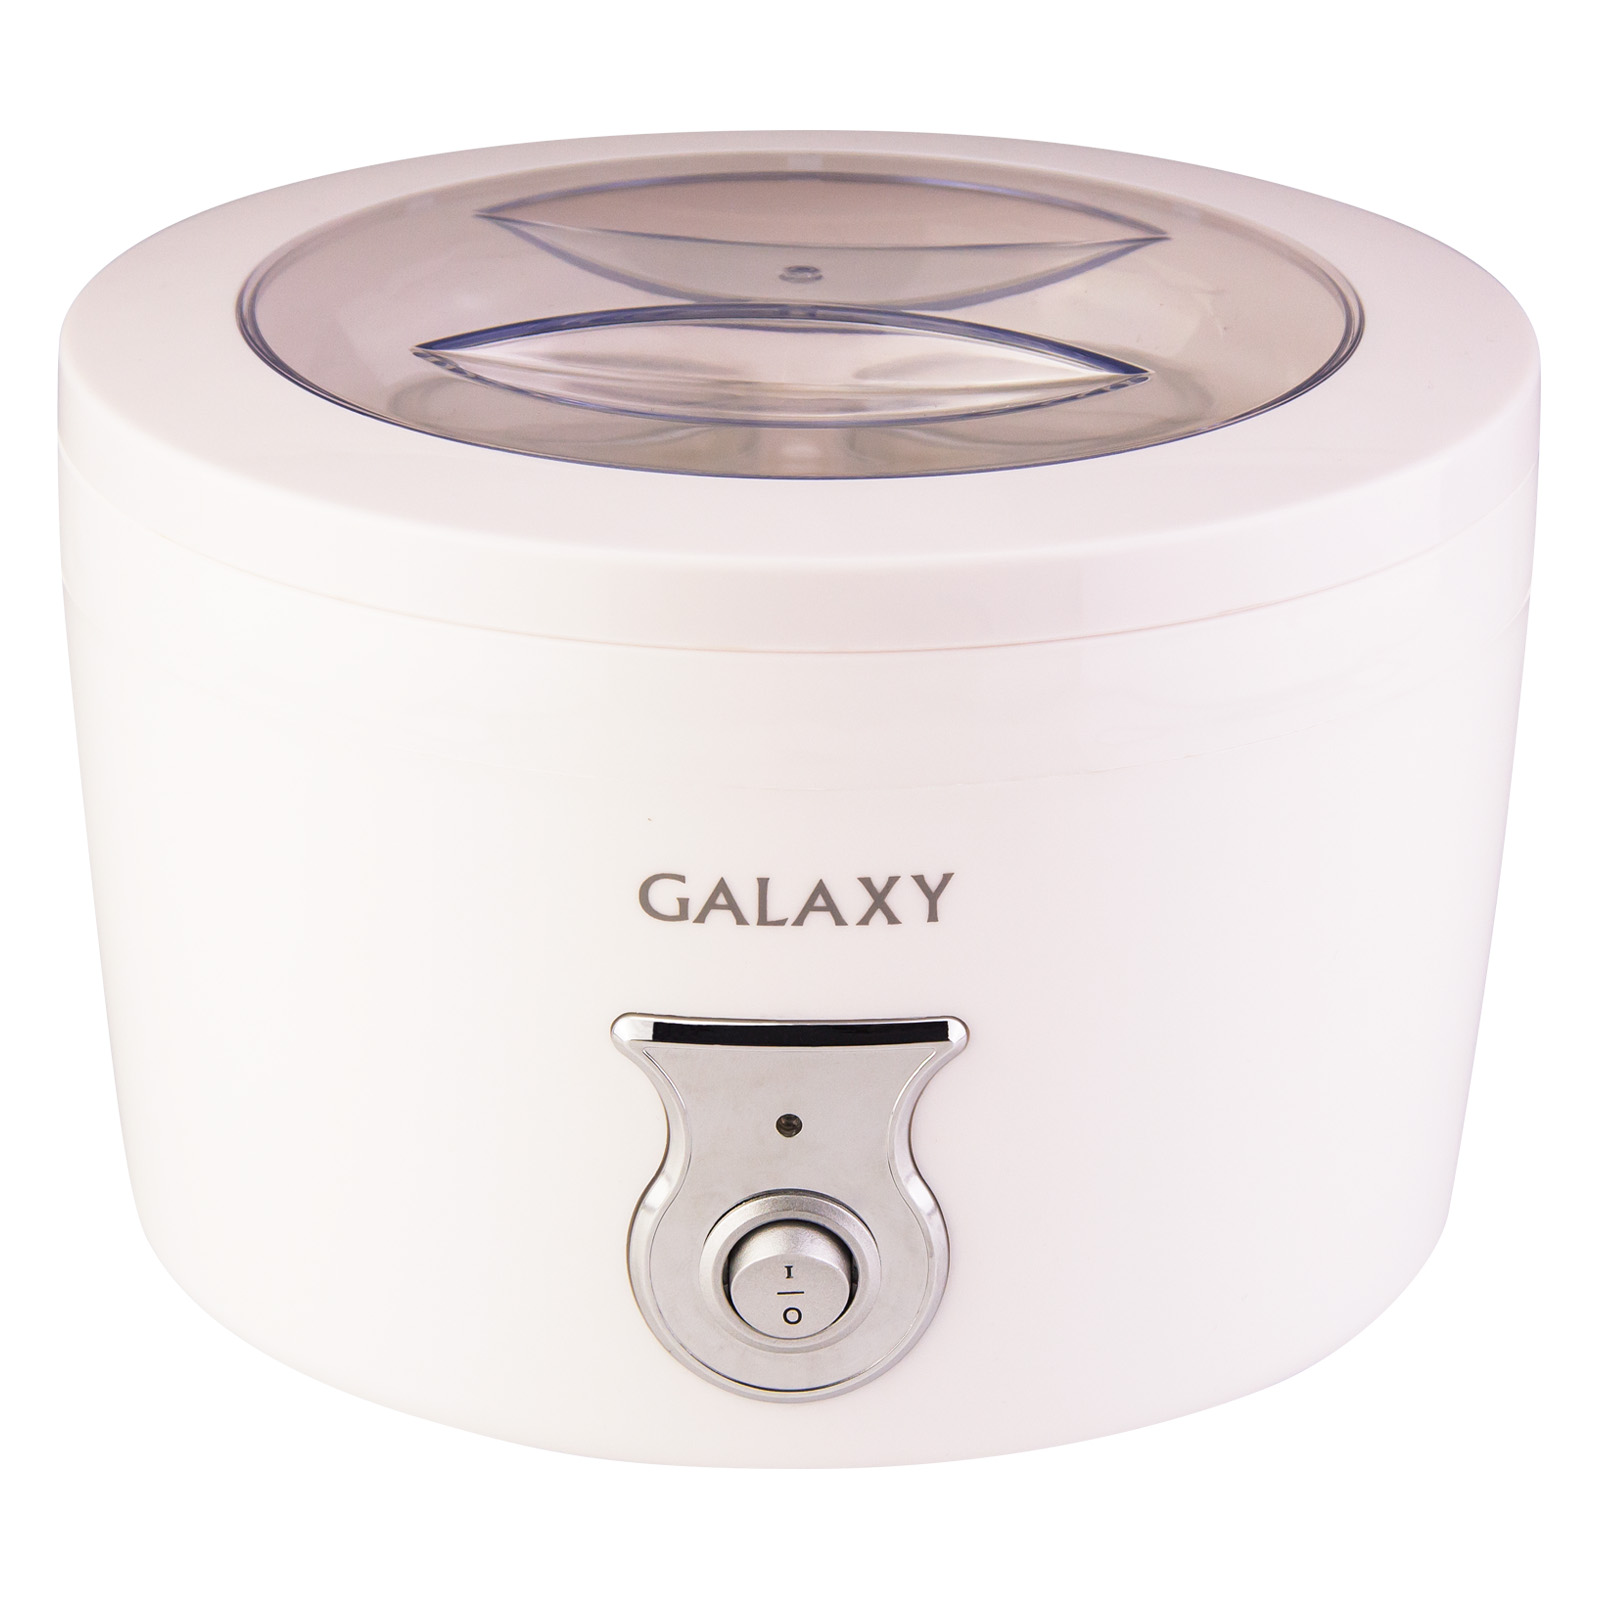 Йогуртница Galaxy GL 2695 (20 Вт, объем на 0,4л продукта), 4 стекл емкости (18/уп)